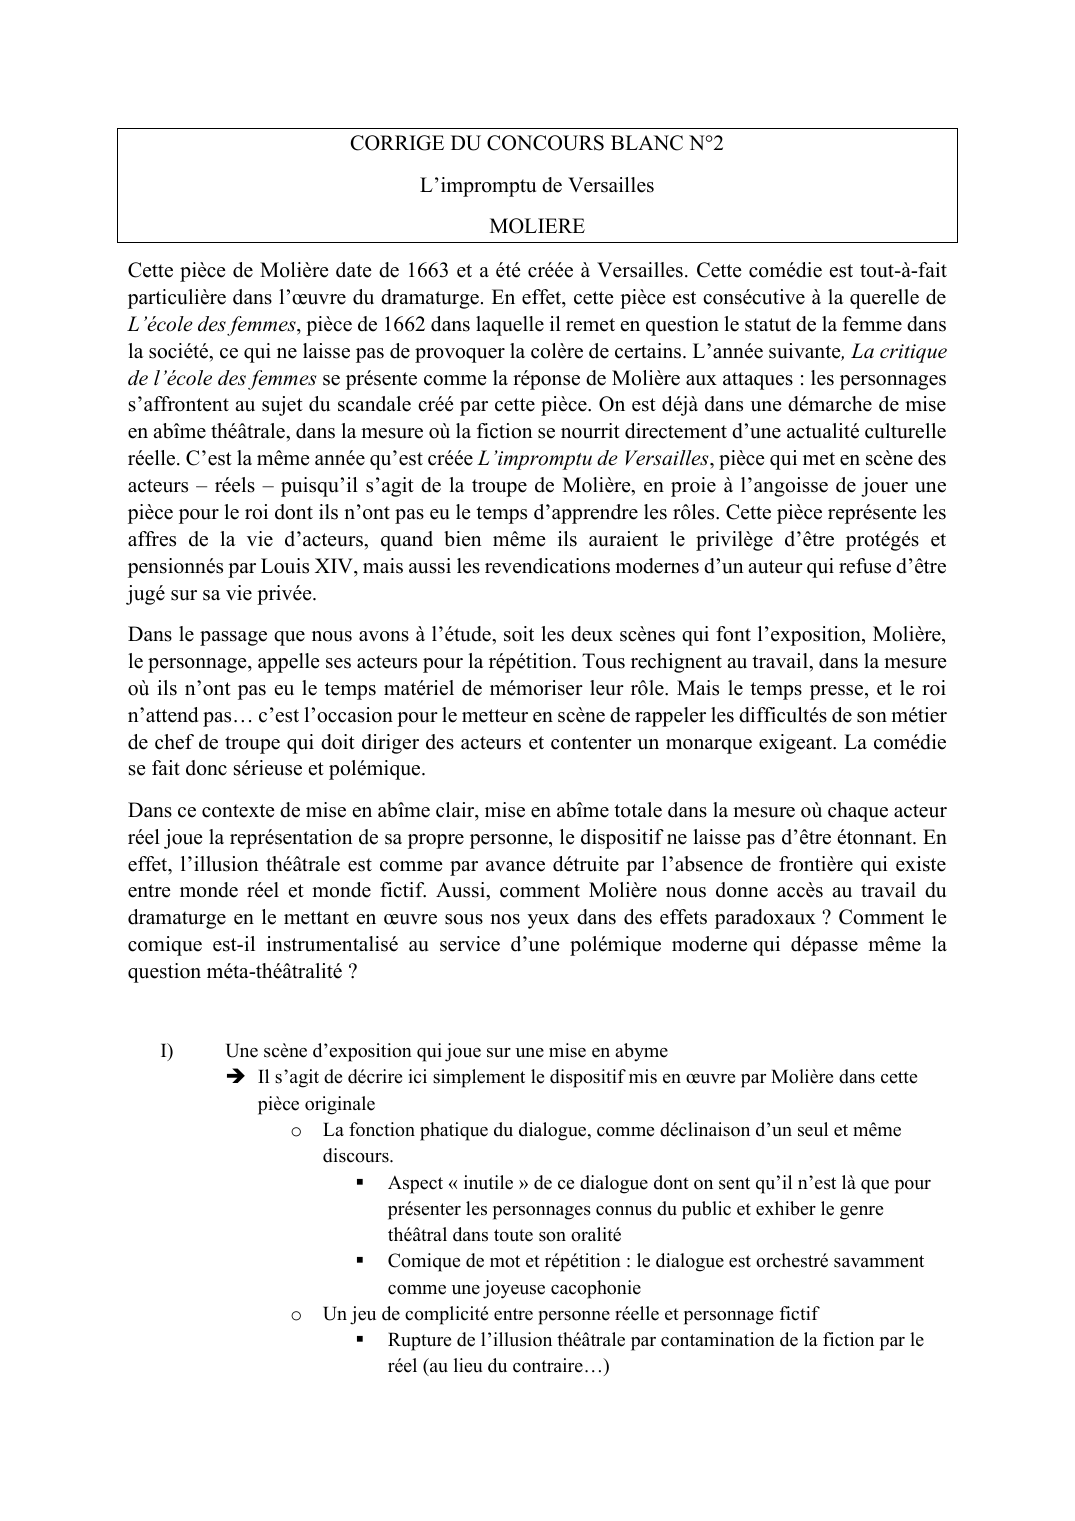 Prévisualisation du document CORRIGE: L’impromptu de Versailles MOLIERE (scène d'exposition)